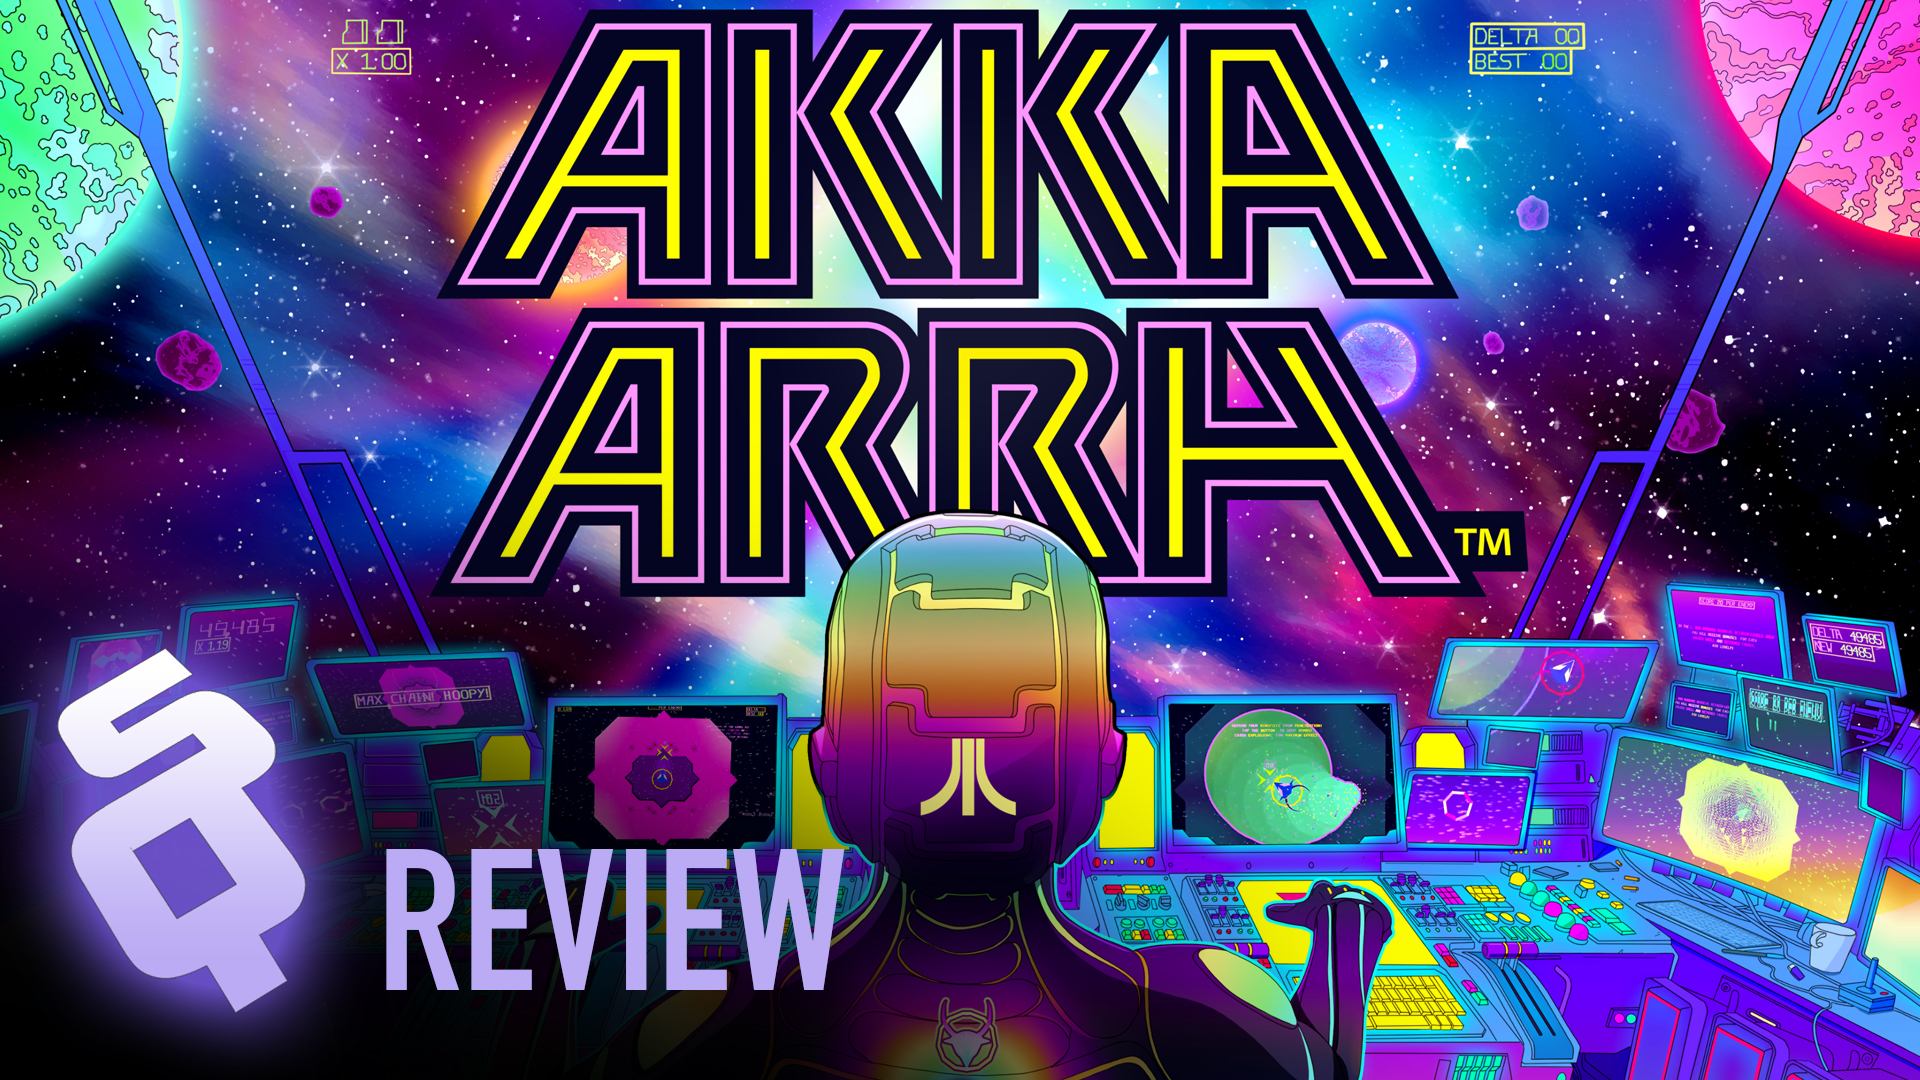 Akka Arrh review